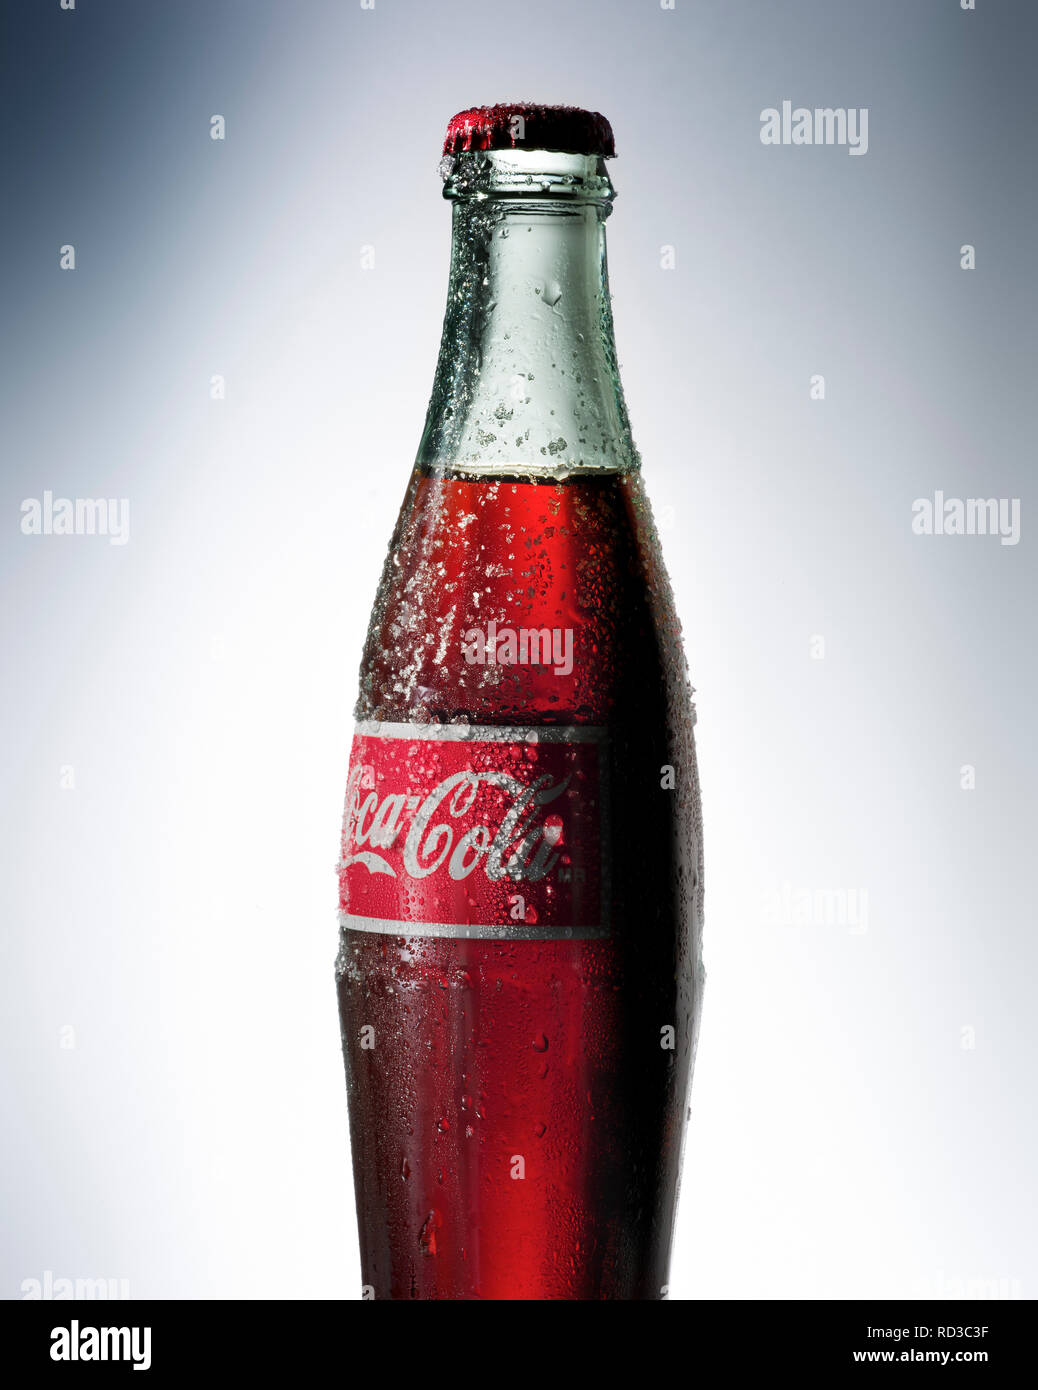 Imagen recortada de Coca Cola de botella de vidrio con etiqueta Foto de stock